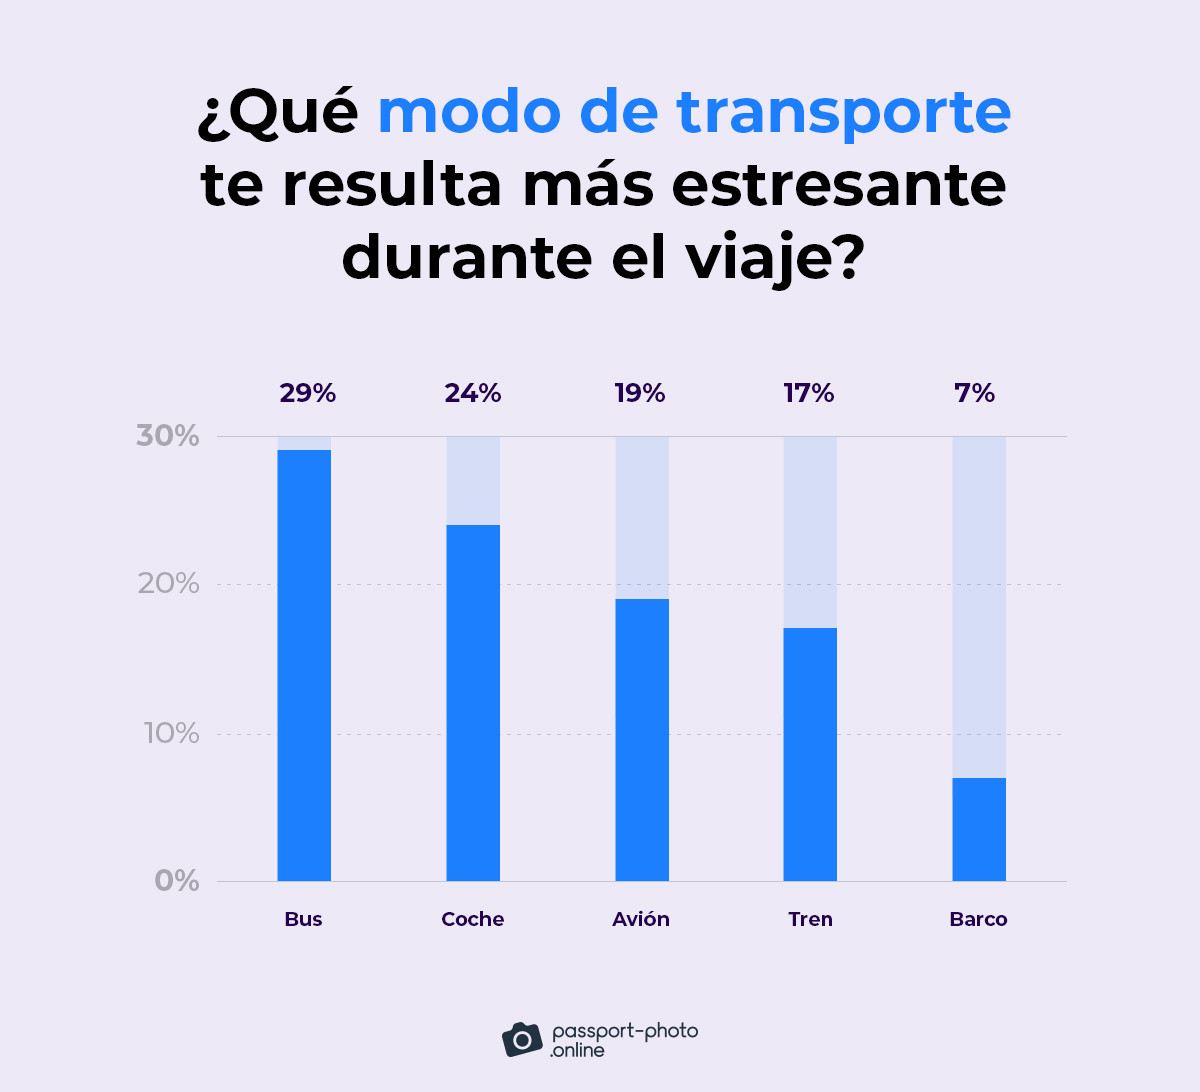 las personas suelen encontrar los autobuses (29%) como el modo de transporte más estresante